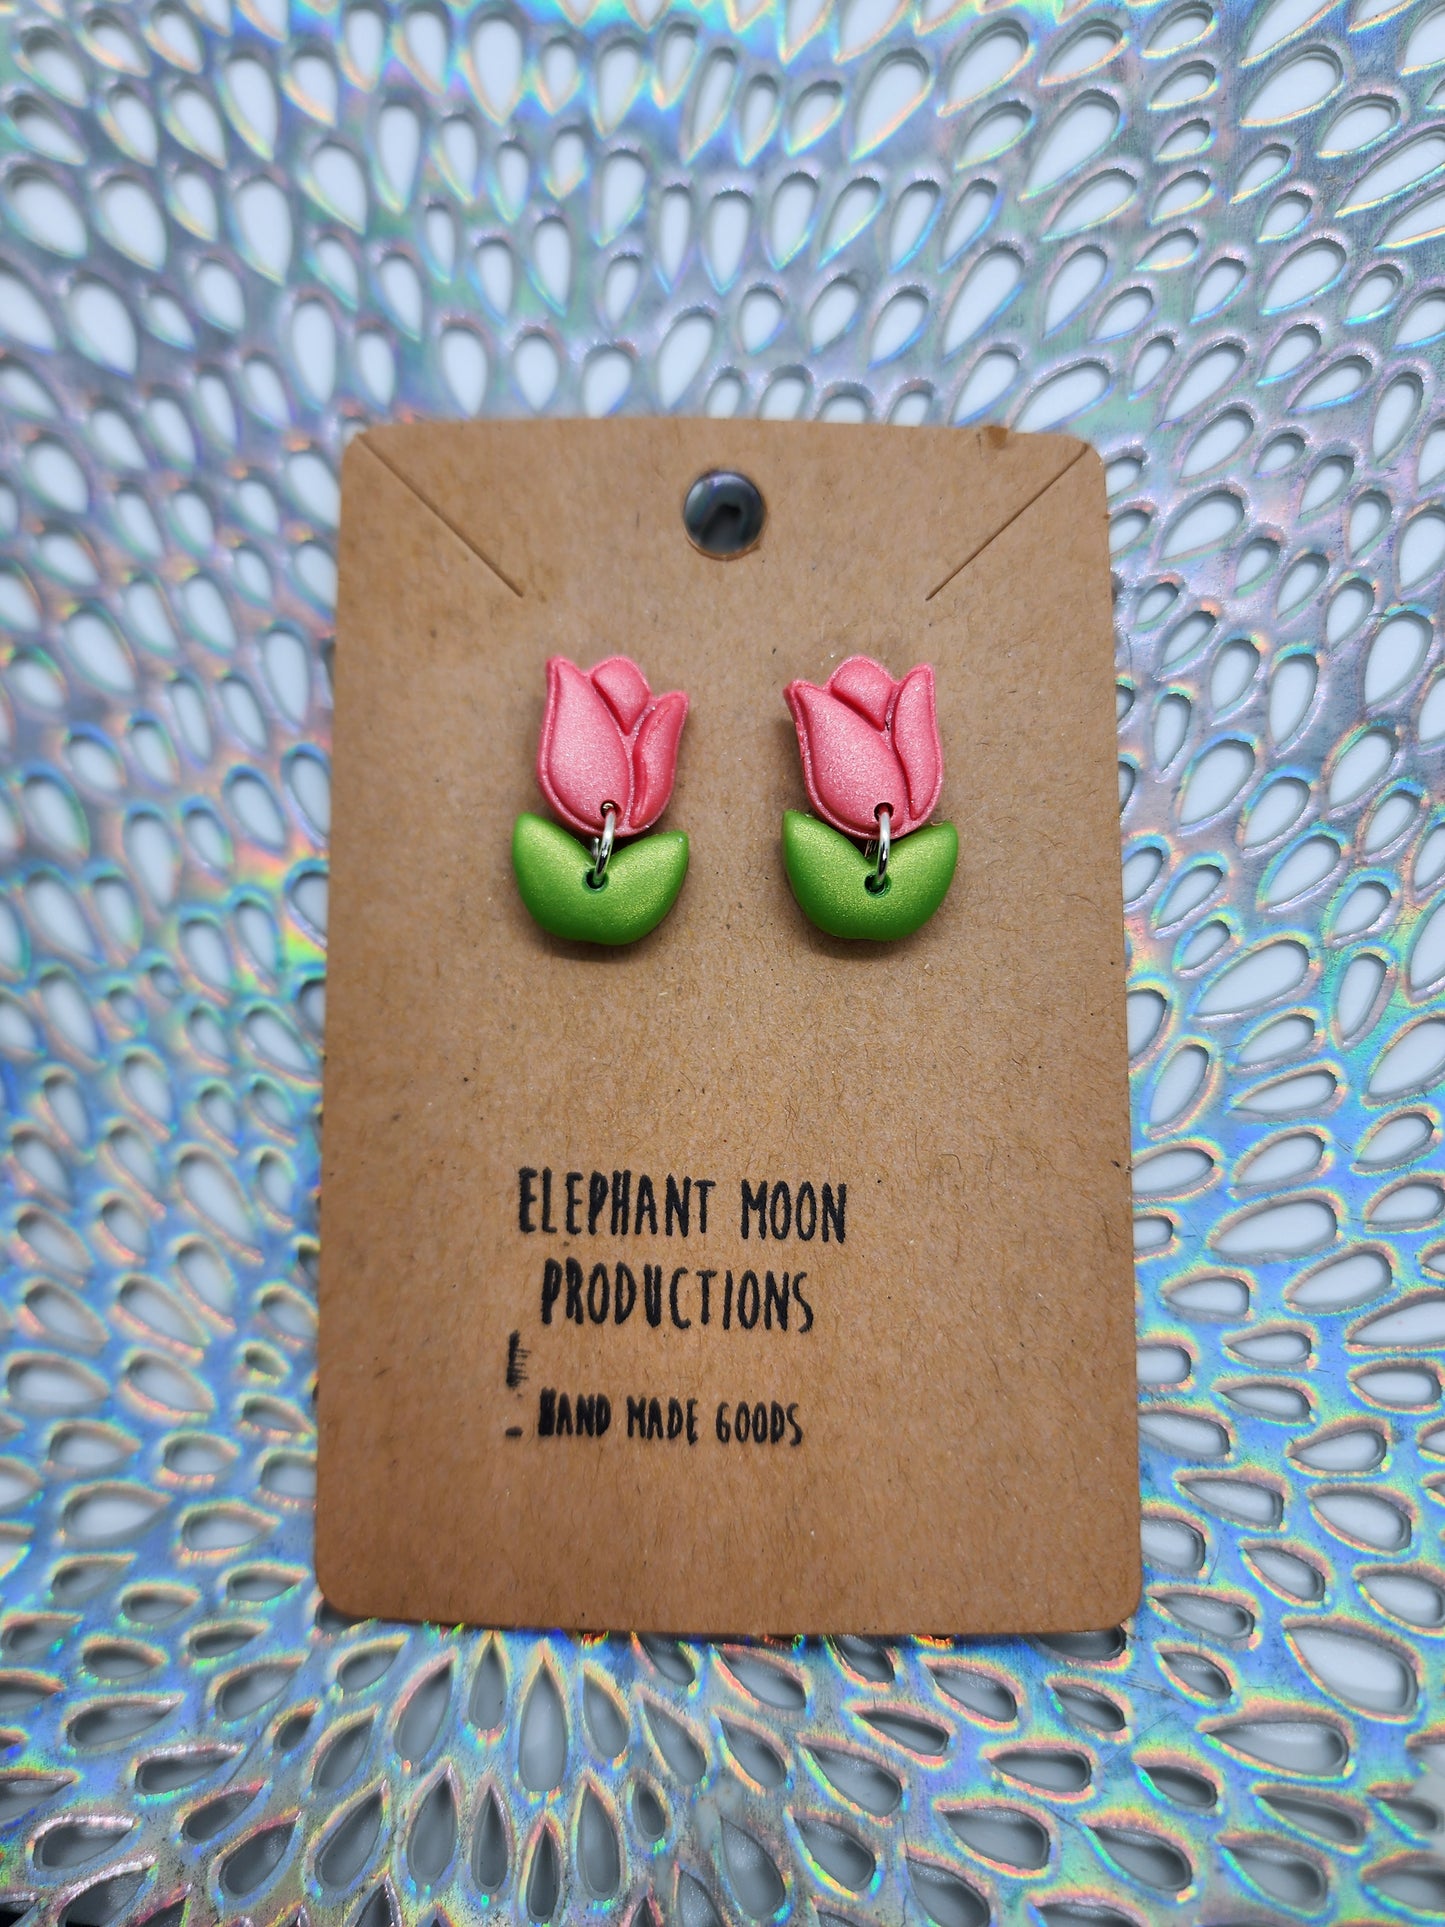 Pink Tulip Stud Earrings